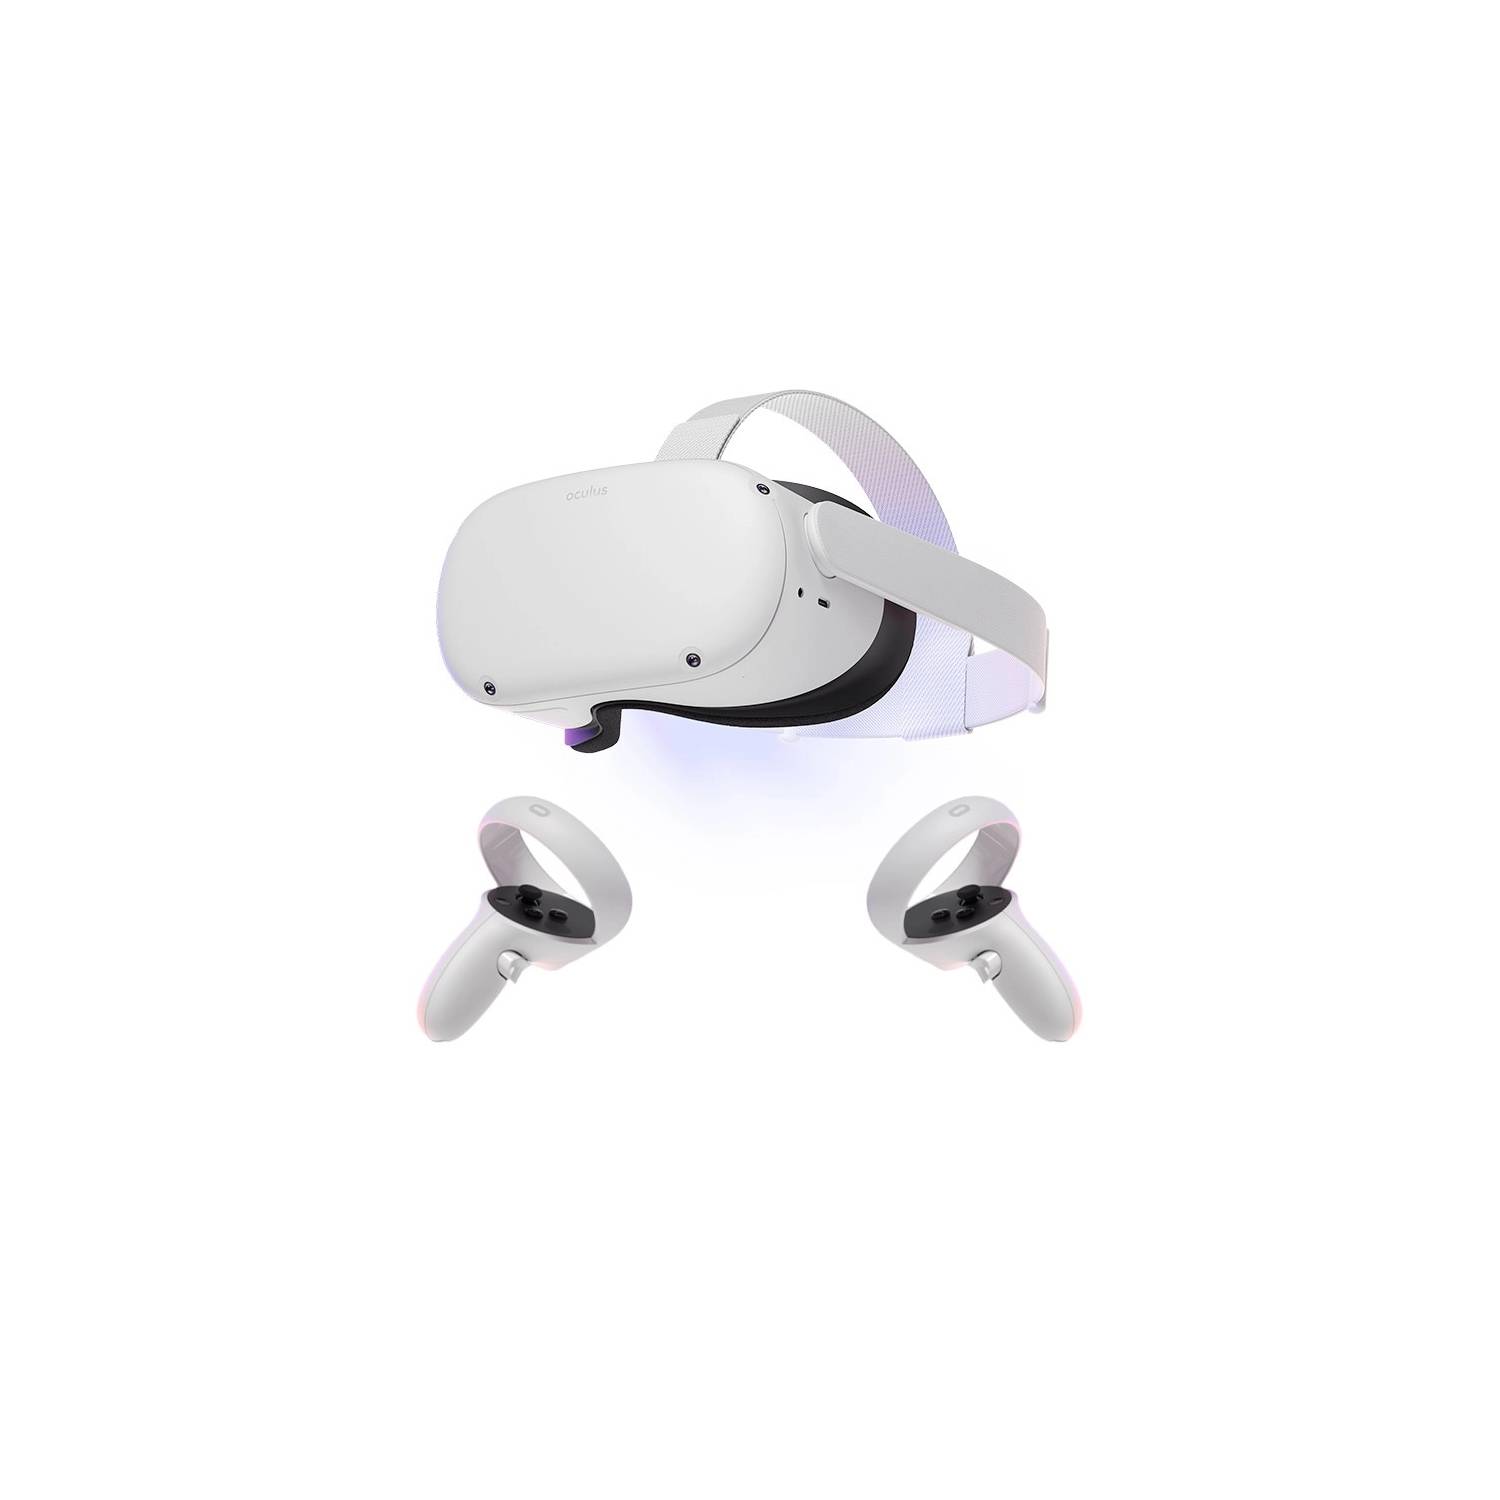 Combo Gafas Realidad Virtual Playstation VR2 + Horizon Call Of The  Mountain Ps5